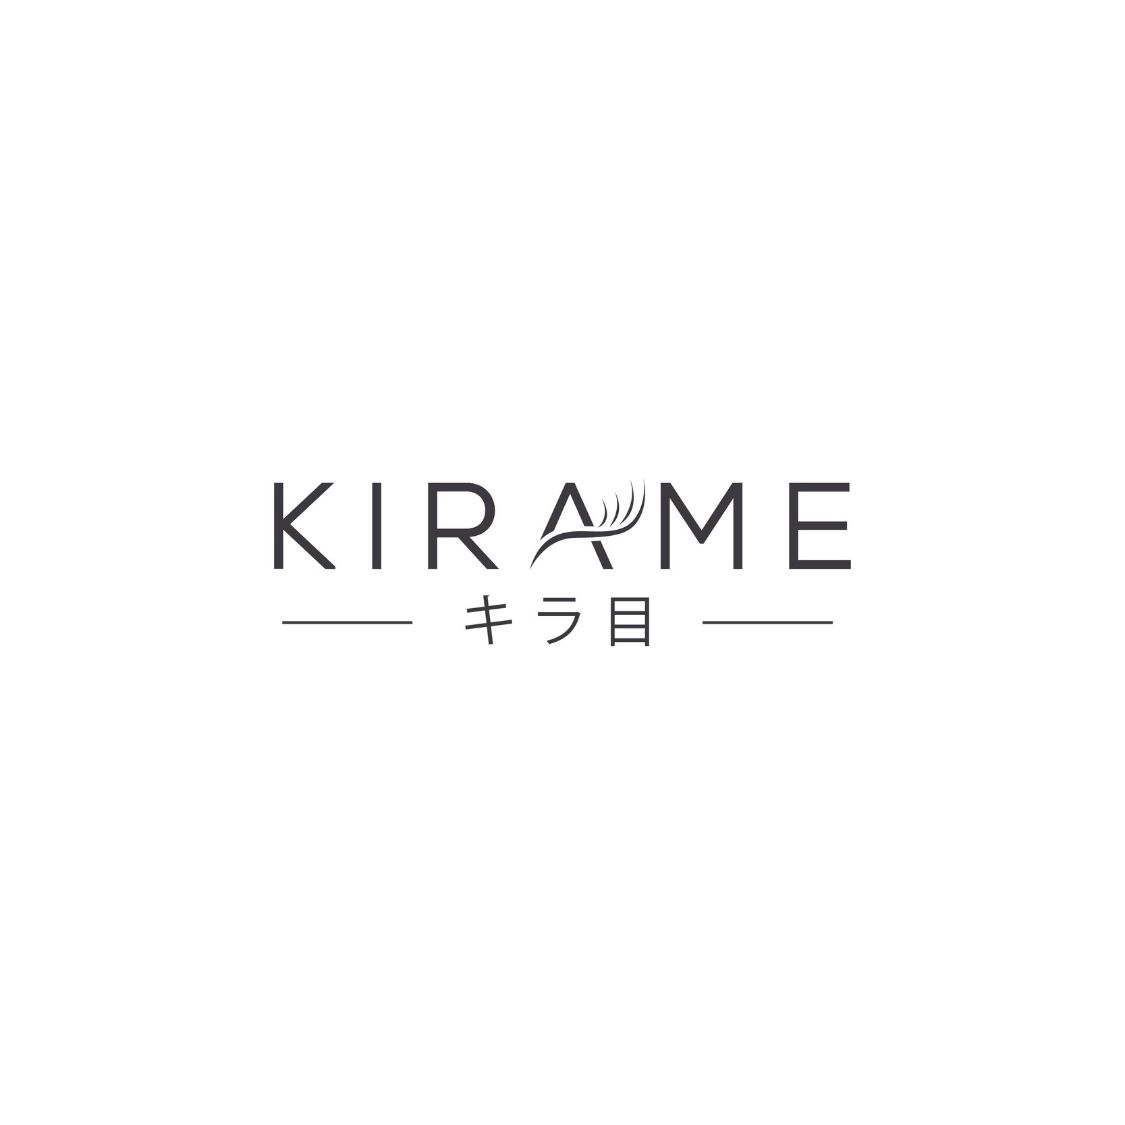 Kirame Logo.jpg